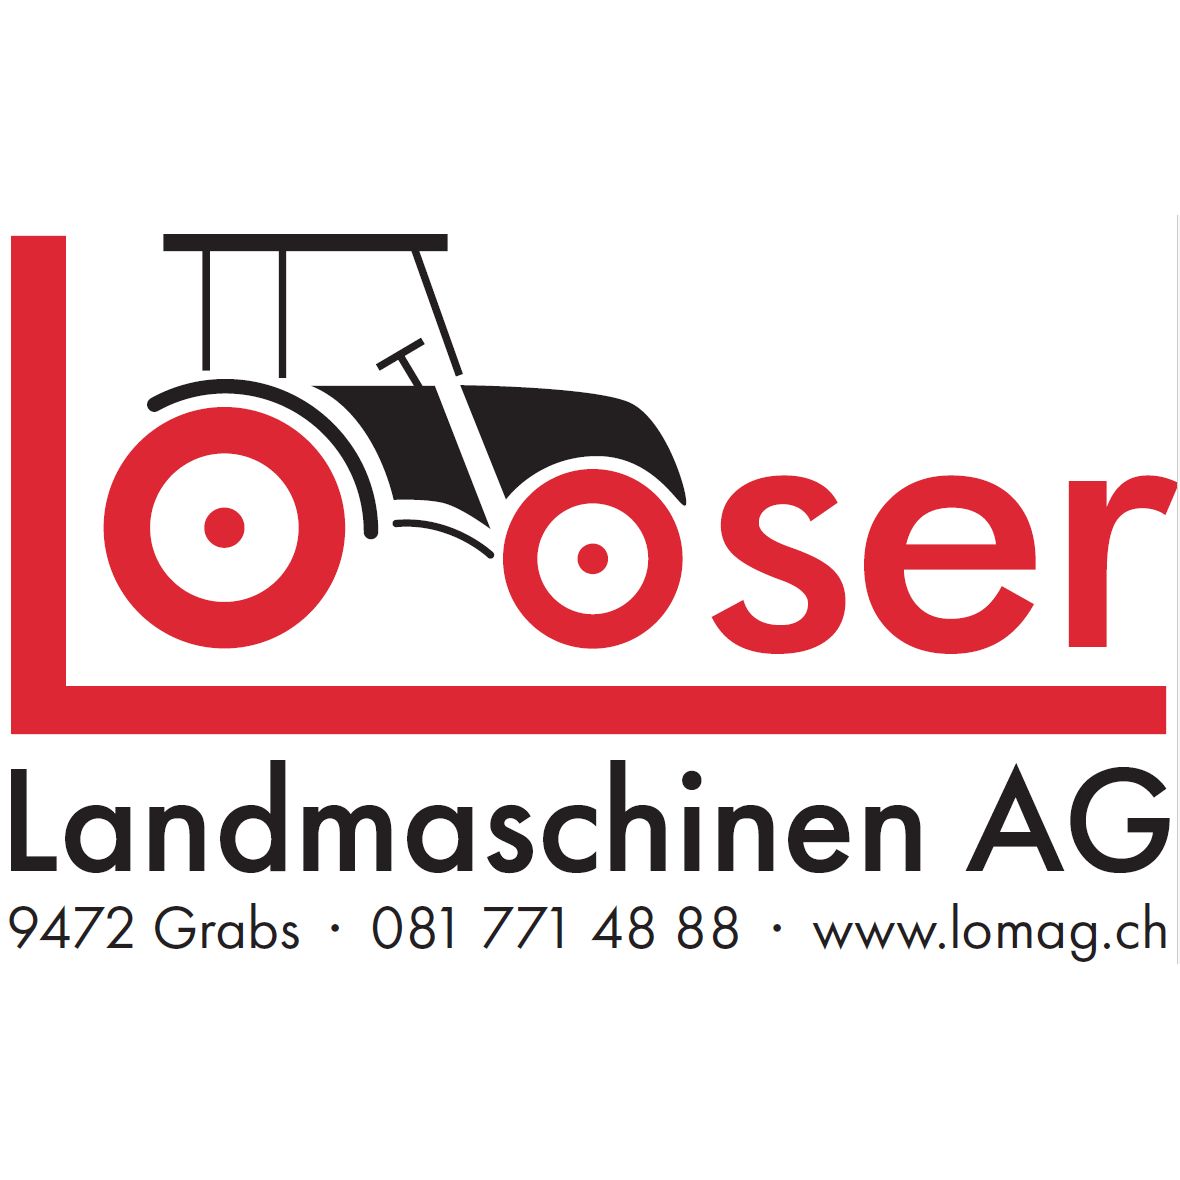 Looser Landmaschinen AG